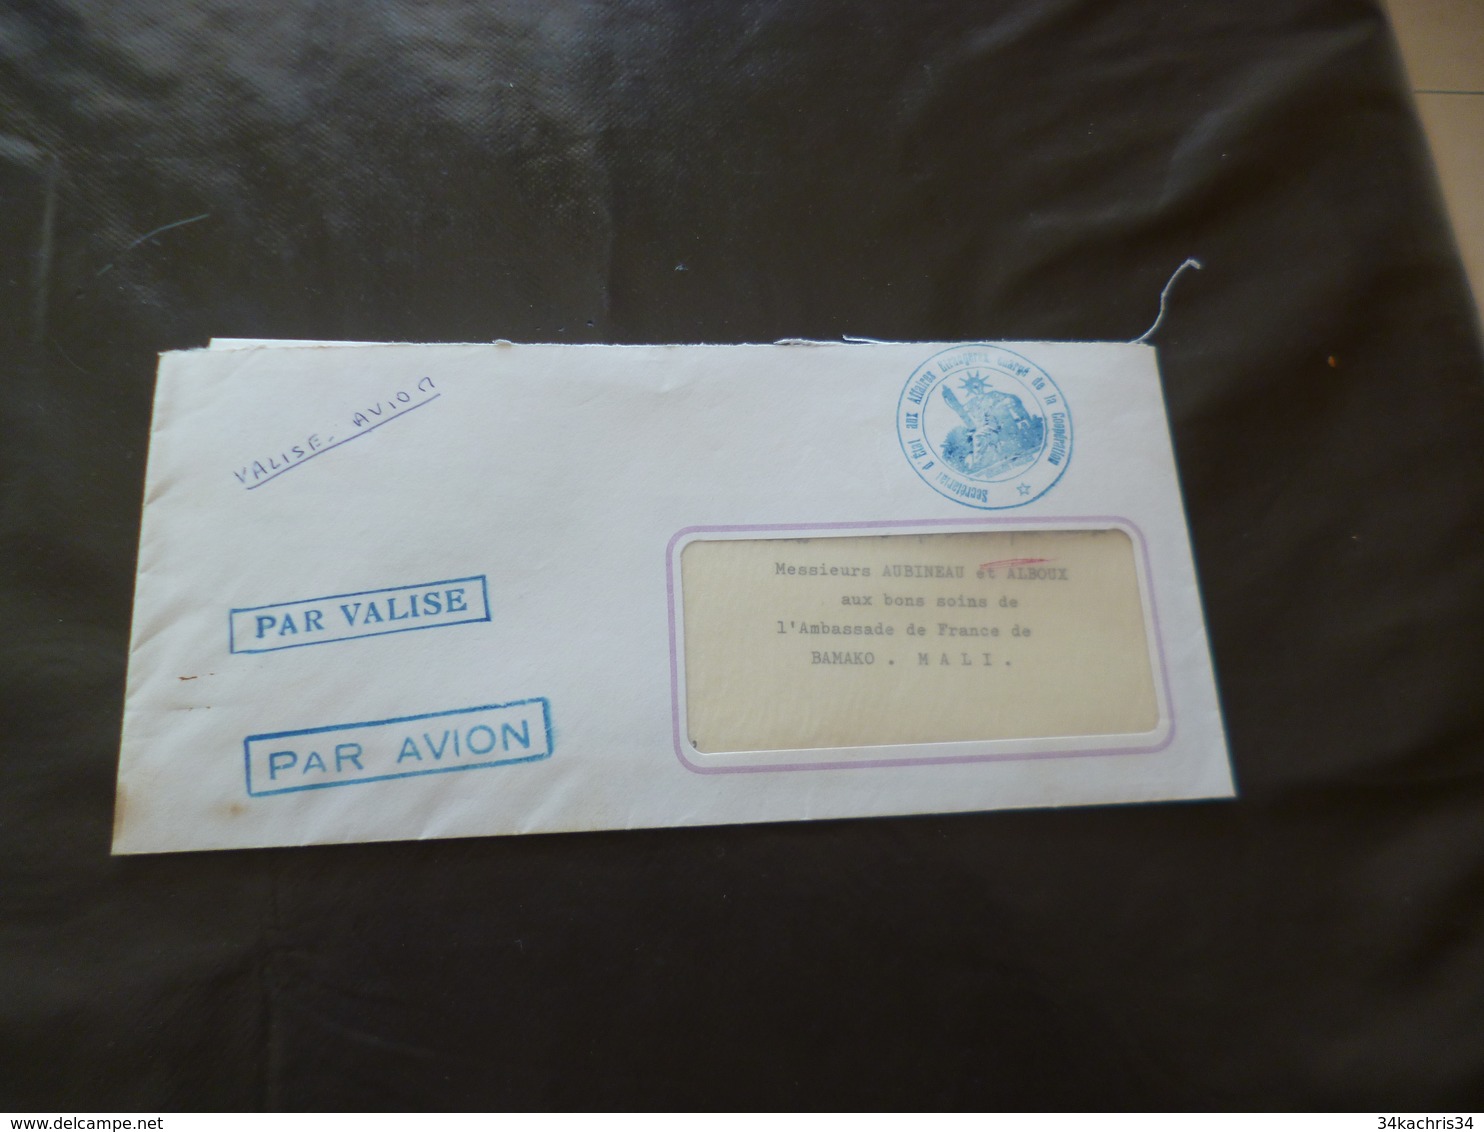 1967 Lettre France Par Valise Diplomatique Par Avion Affaires étrangères Coopération Pour Mali Bamako - Cartas & Documentos